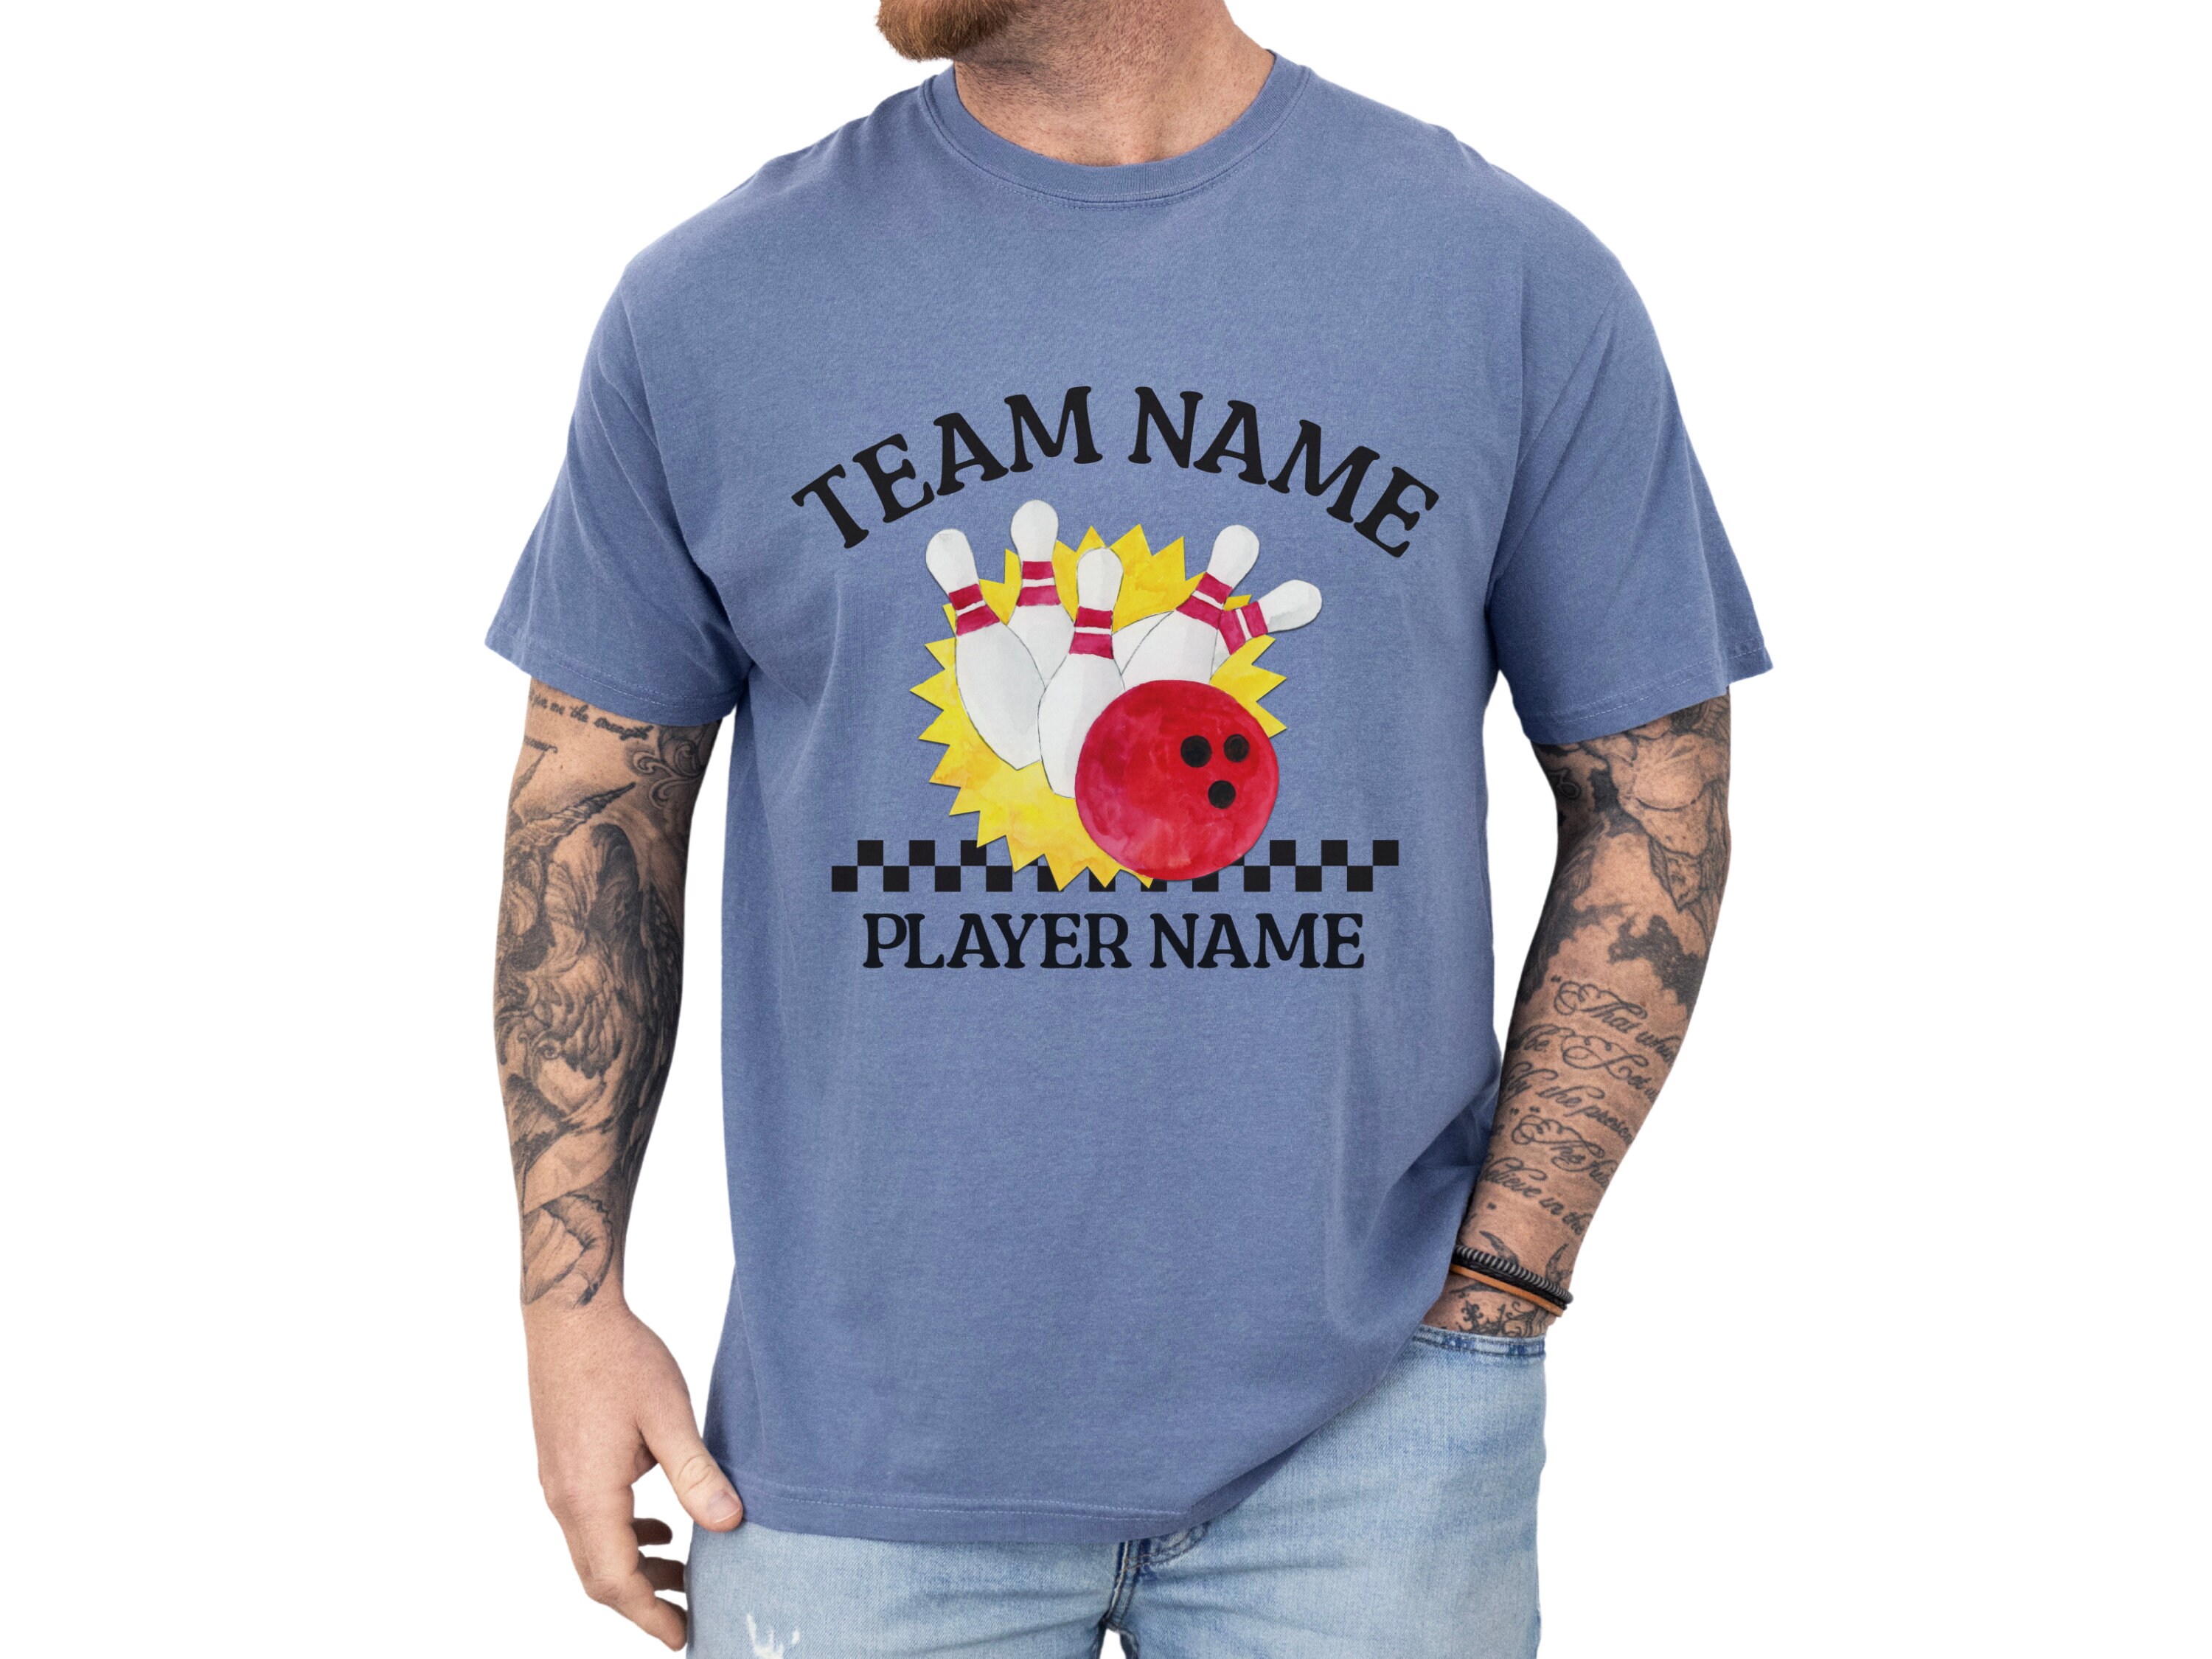 Custom Bowling Team Shirt, Personalized Bowling Shirt, Matching Team TShirt, Retro Bowling Squad T Shirt, Bowling Crew Tee, Gift For Bowlers